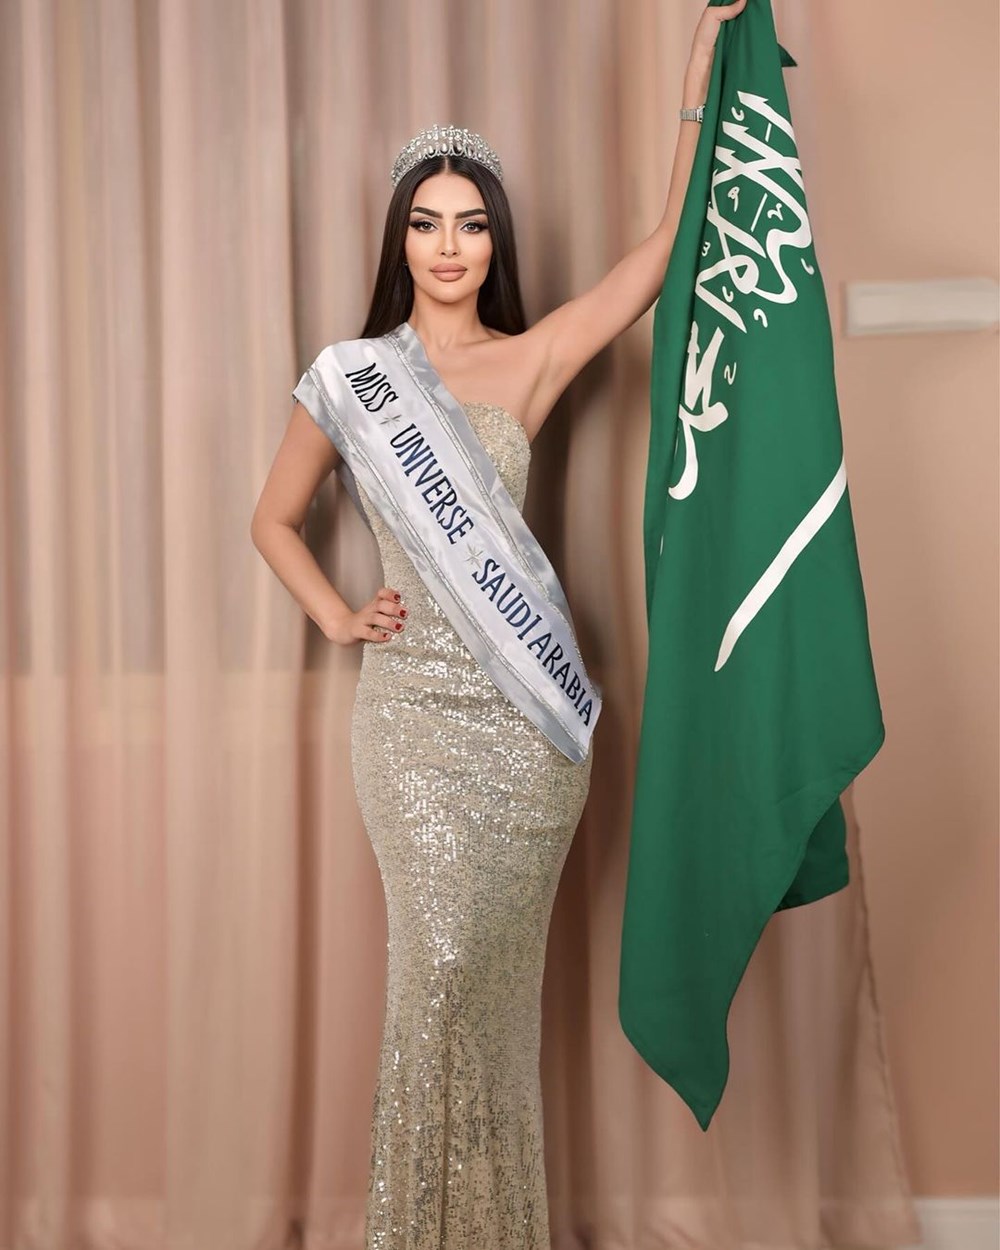 Kainat Güzeli olmak için yarışacaktı: Suudi Arabistanlı modelin yalanı ortaya çıktı - 2